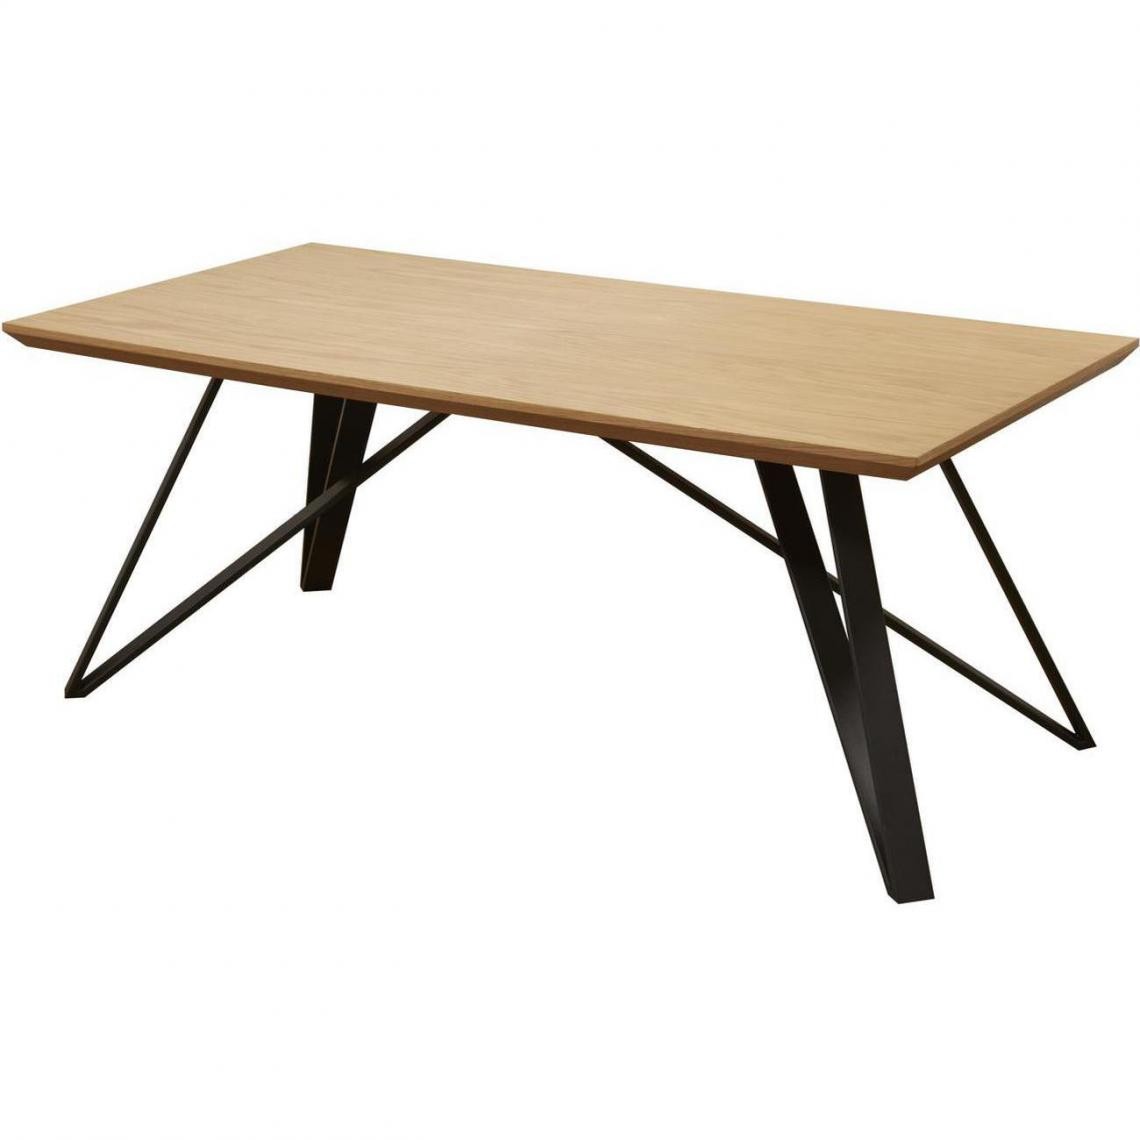 ATHM DESIGN - Table basse ST MORE Noir et Marron - plateau Bois pieds Metal Noir 120 x 60 - Tables basses